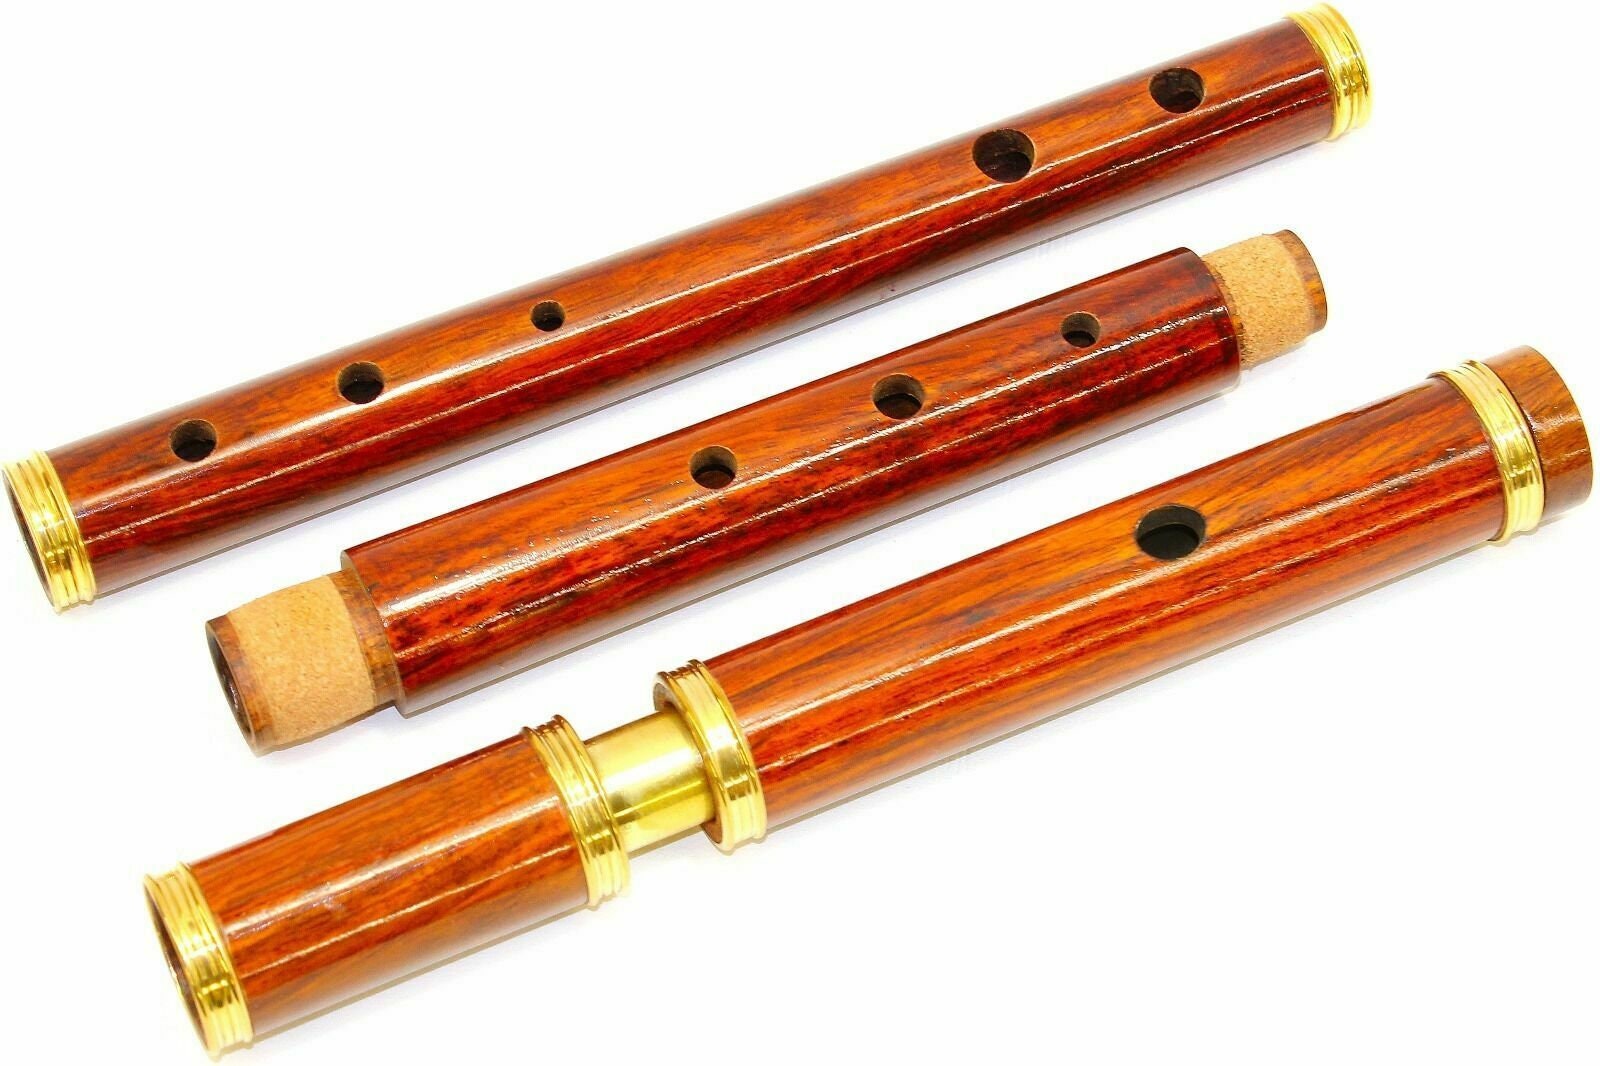 Flûte Irlandaise Irish Tin Whistle 6 Trou Clarinette Whistle Flûte Nickelé  Instrument De Musique Du 45,76 €